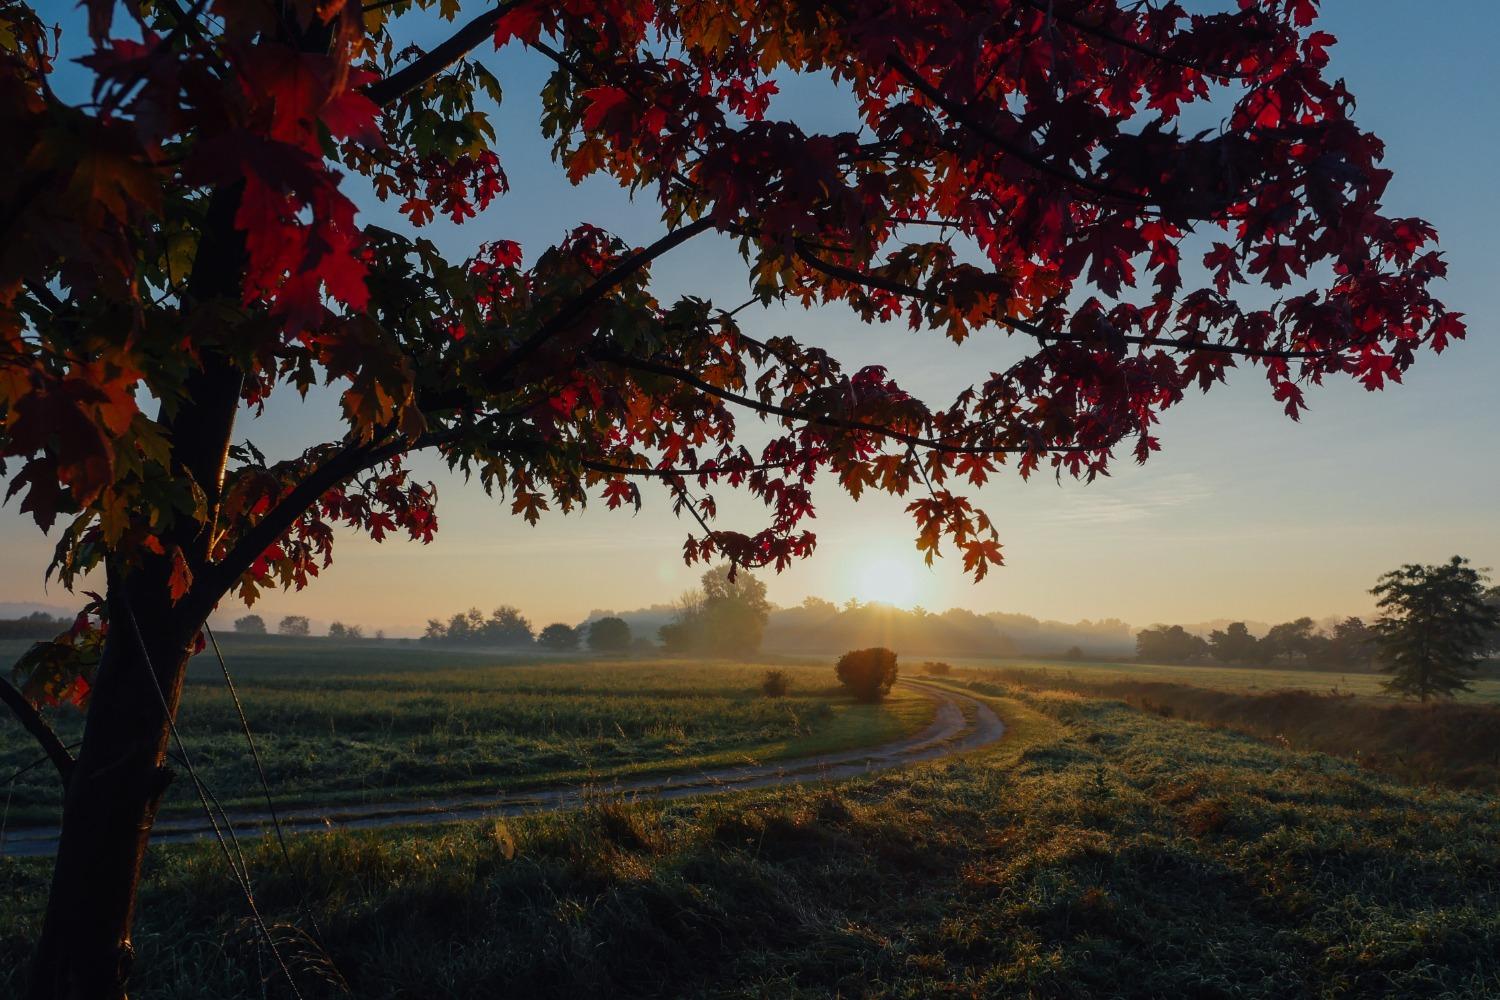 An autumn sunrise over a field